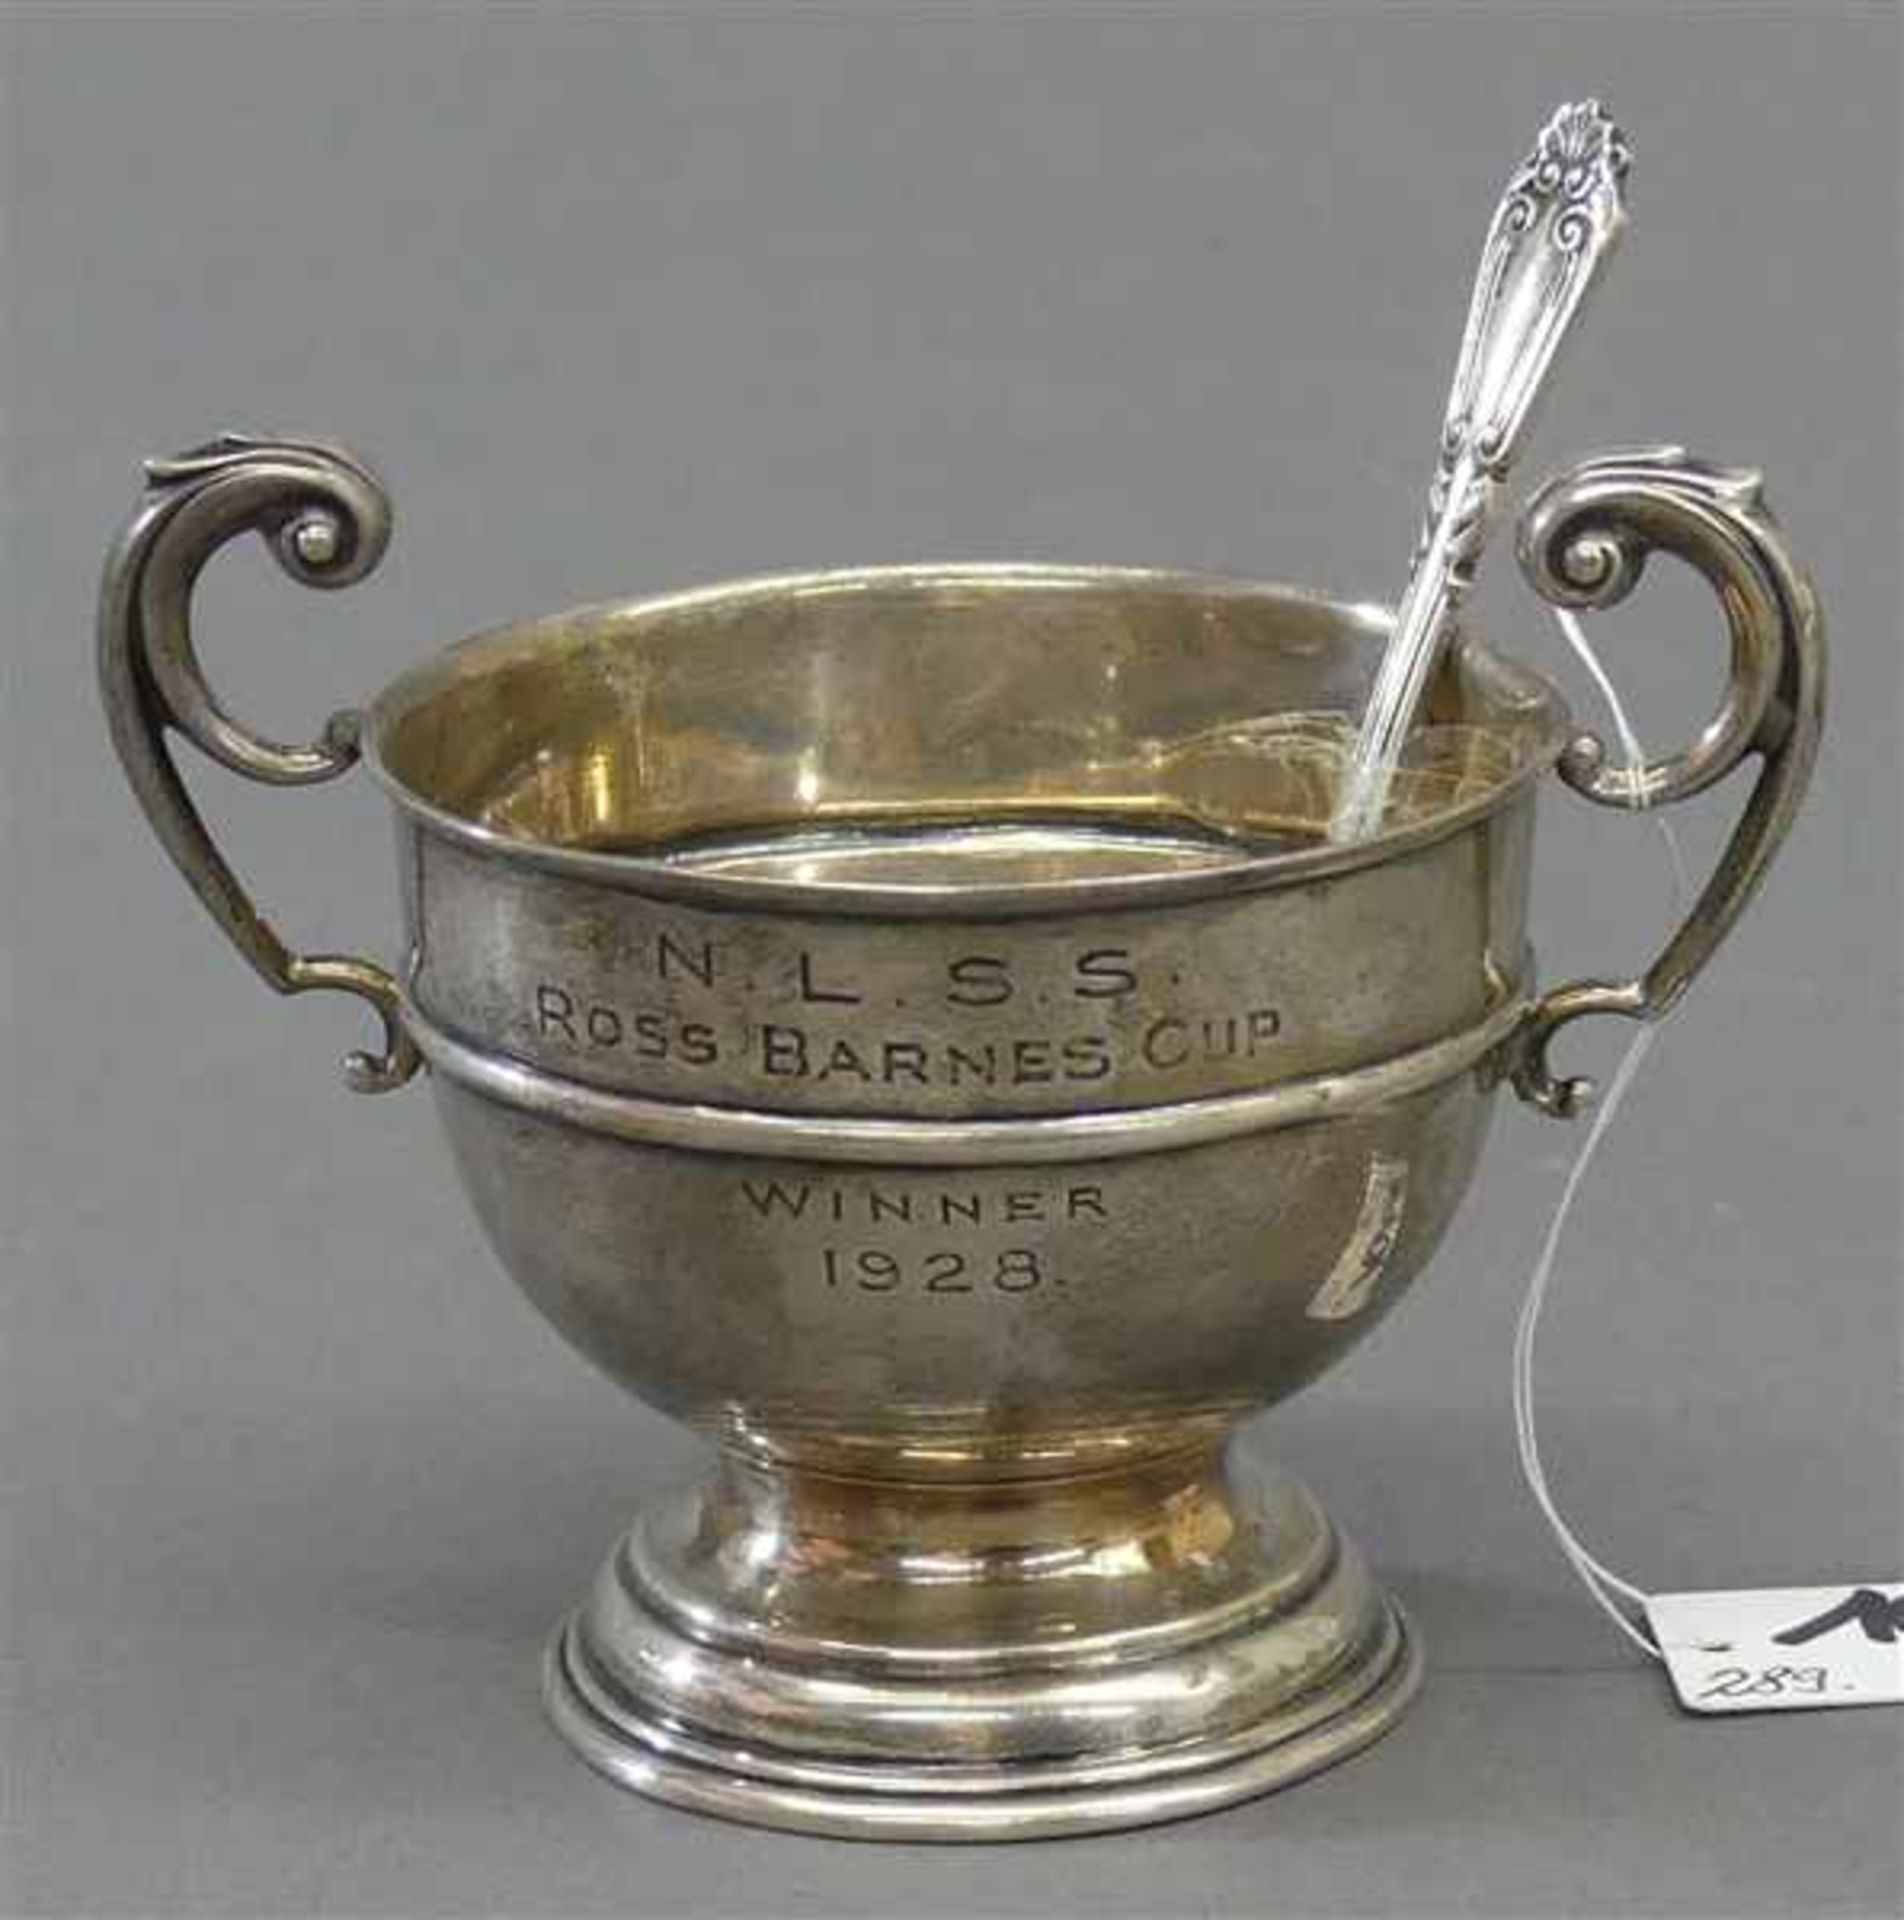 GewürzschälchenSilber, Birmingham, seitl. Henkel, graviert, "Ross Barnes Cup, Winner 1928", mit